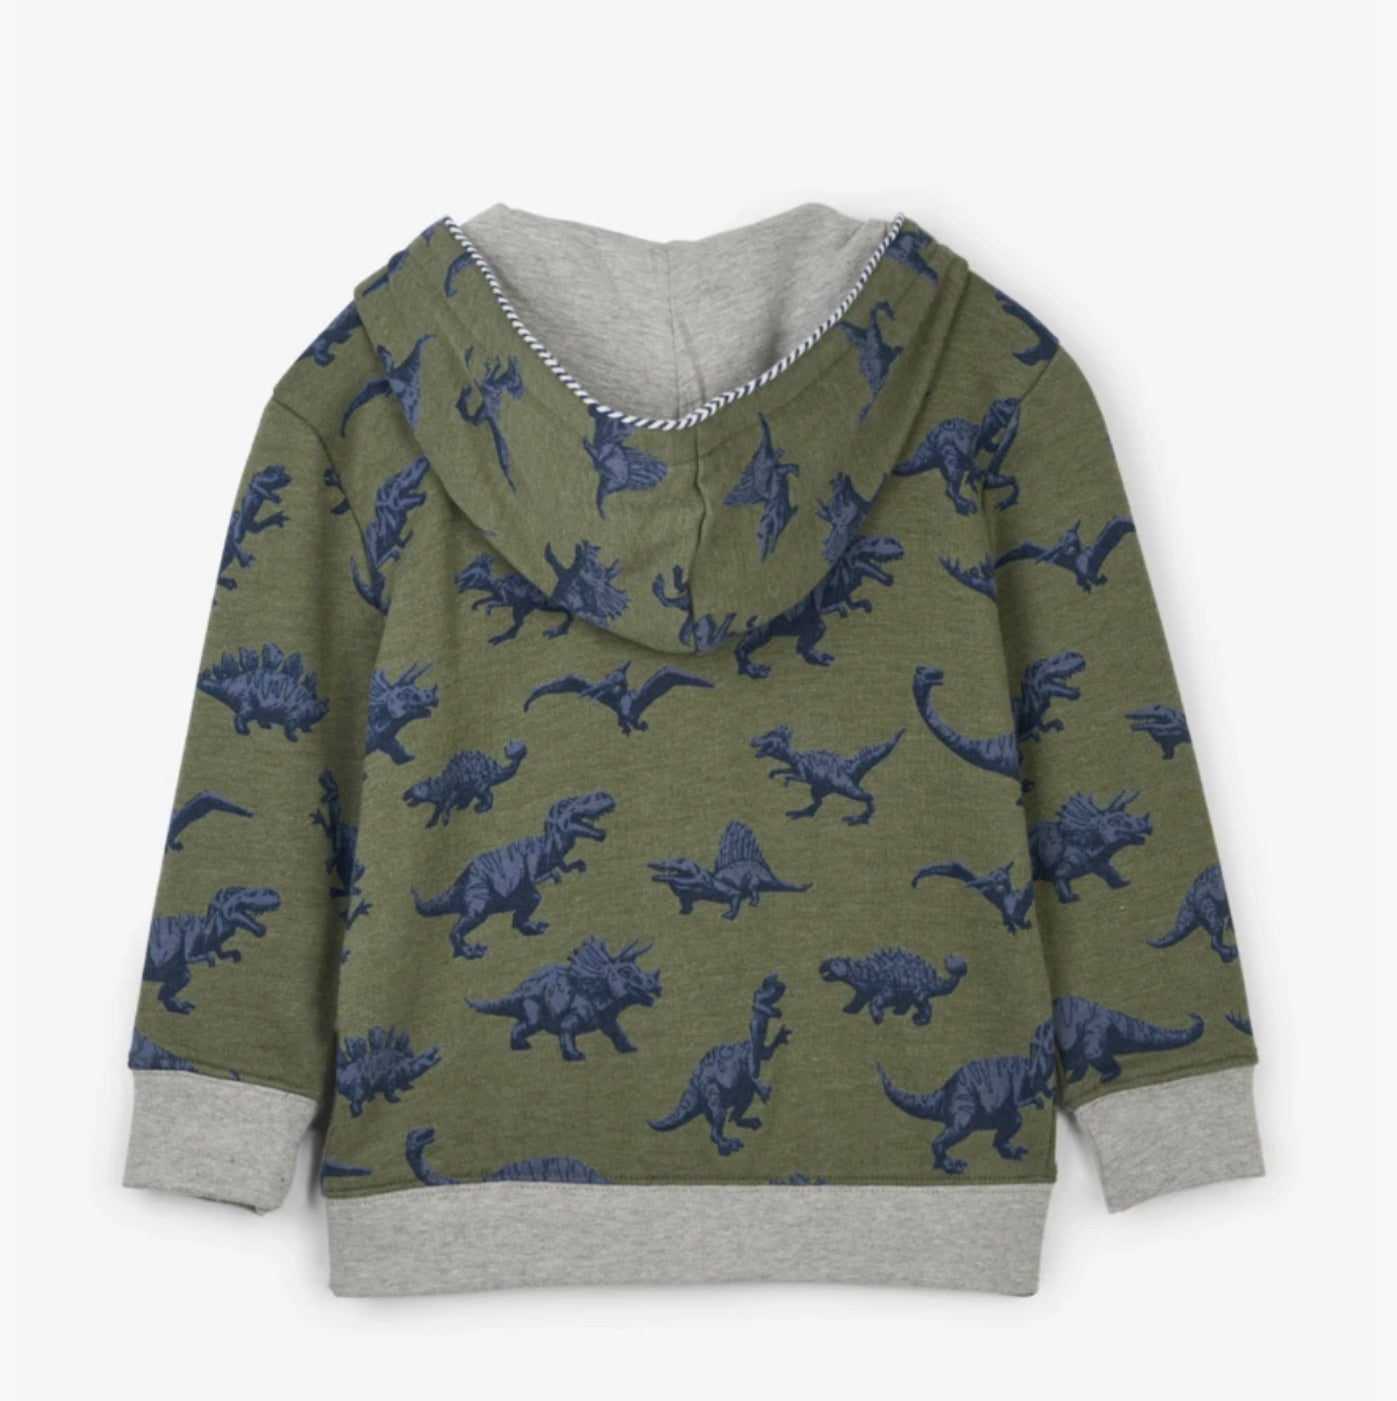 Dino Herd full zip hoodie